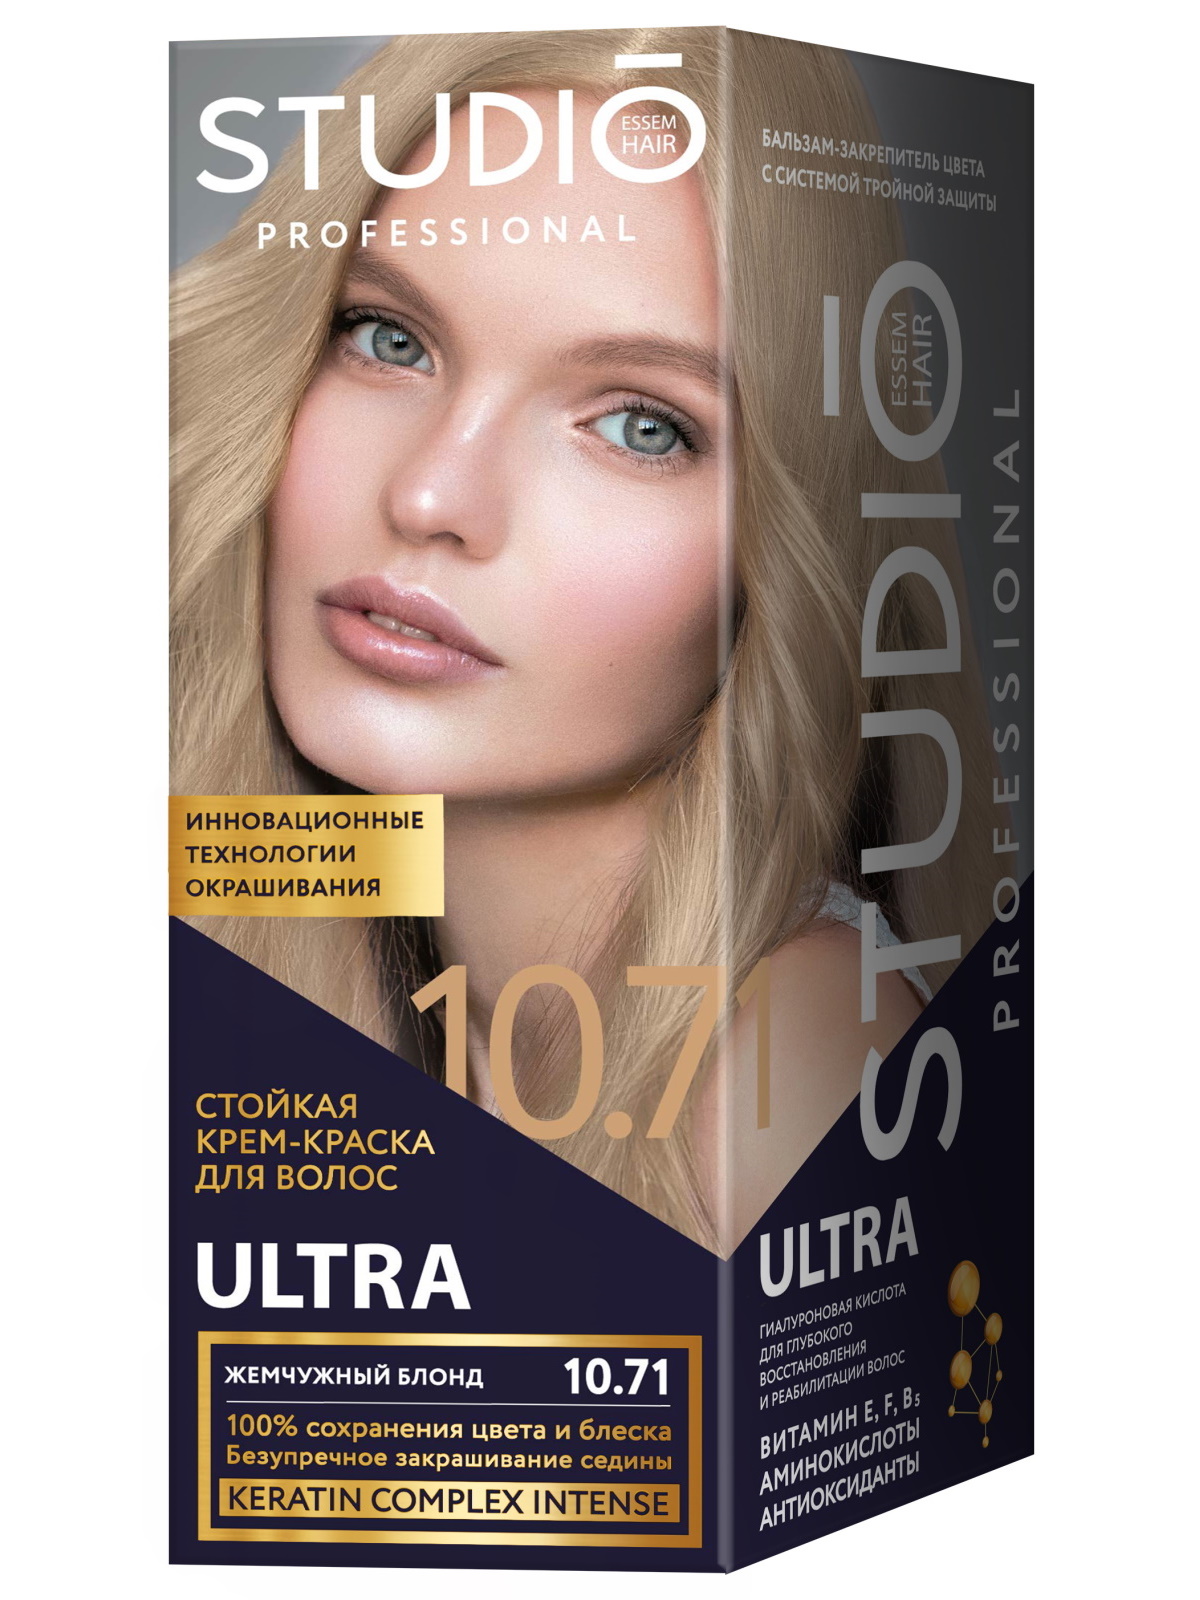 Комплект ULTRA для окрашивания волос STUDIO PROFESSIONAL 10.71 жемчужный блонд 2*50+15 мл